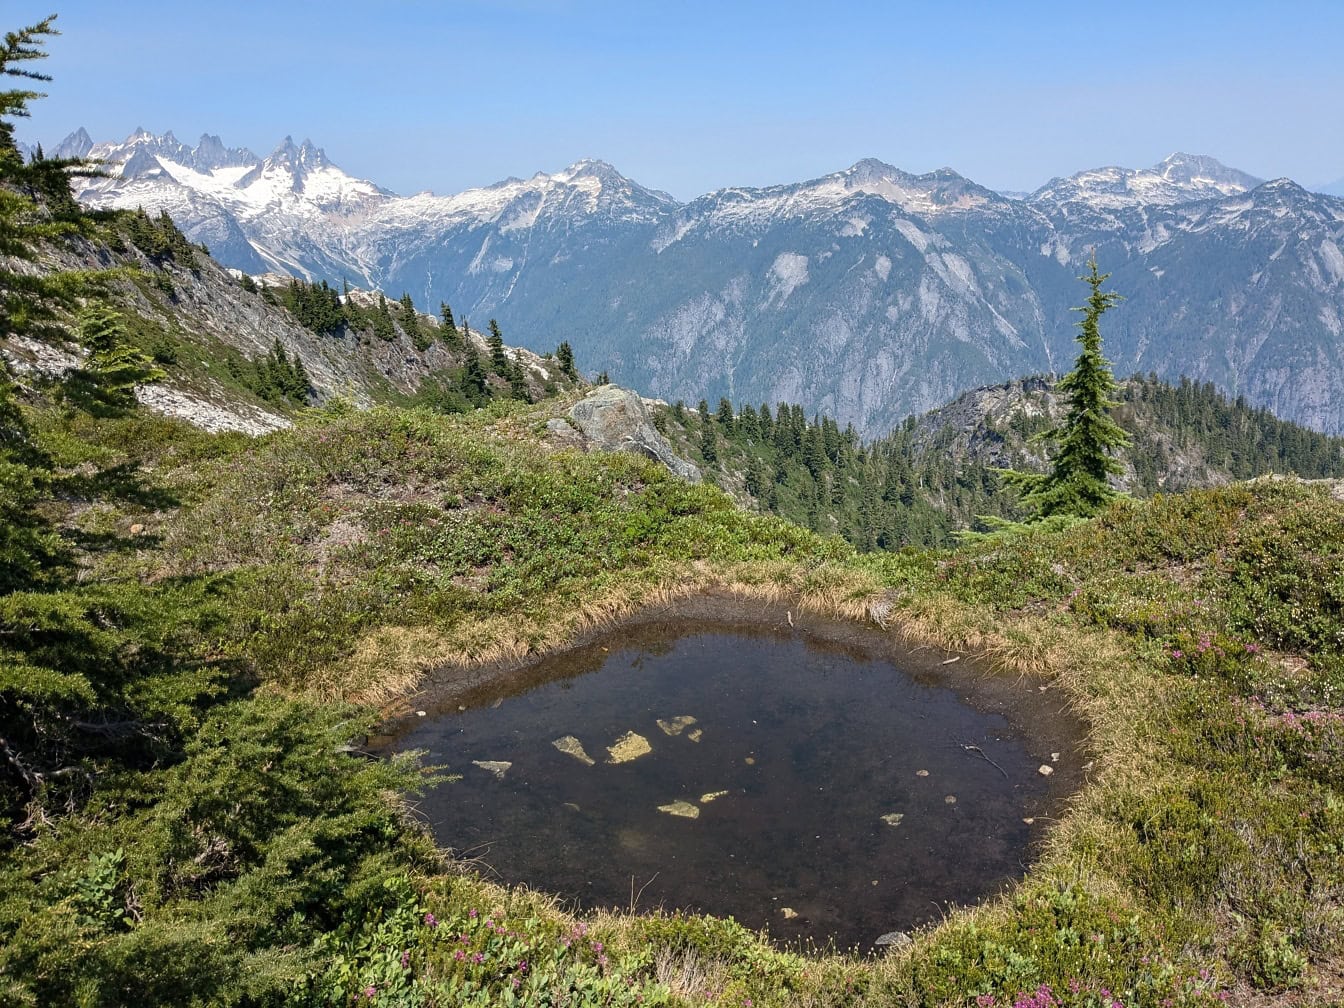 Małe jezioro na trawiastym terenie z górami w tle w Parku Narodowym North Cascades w stanie Waszyngton